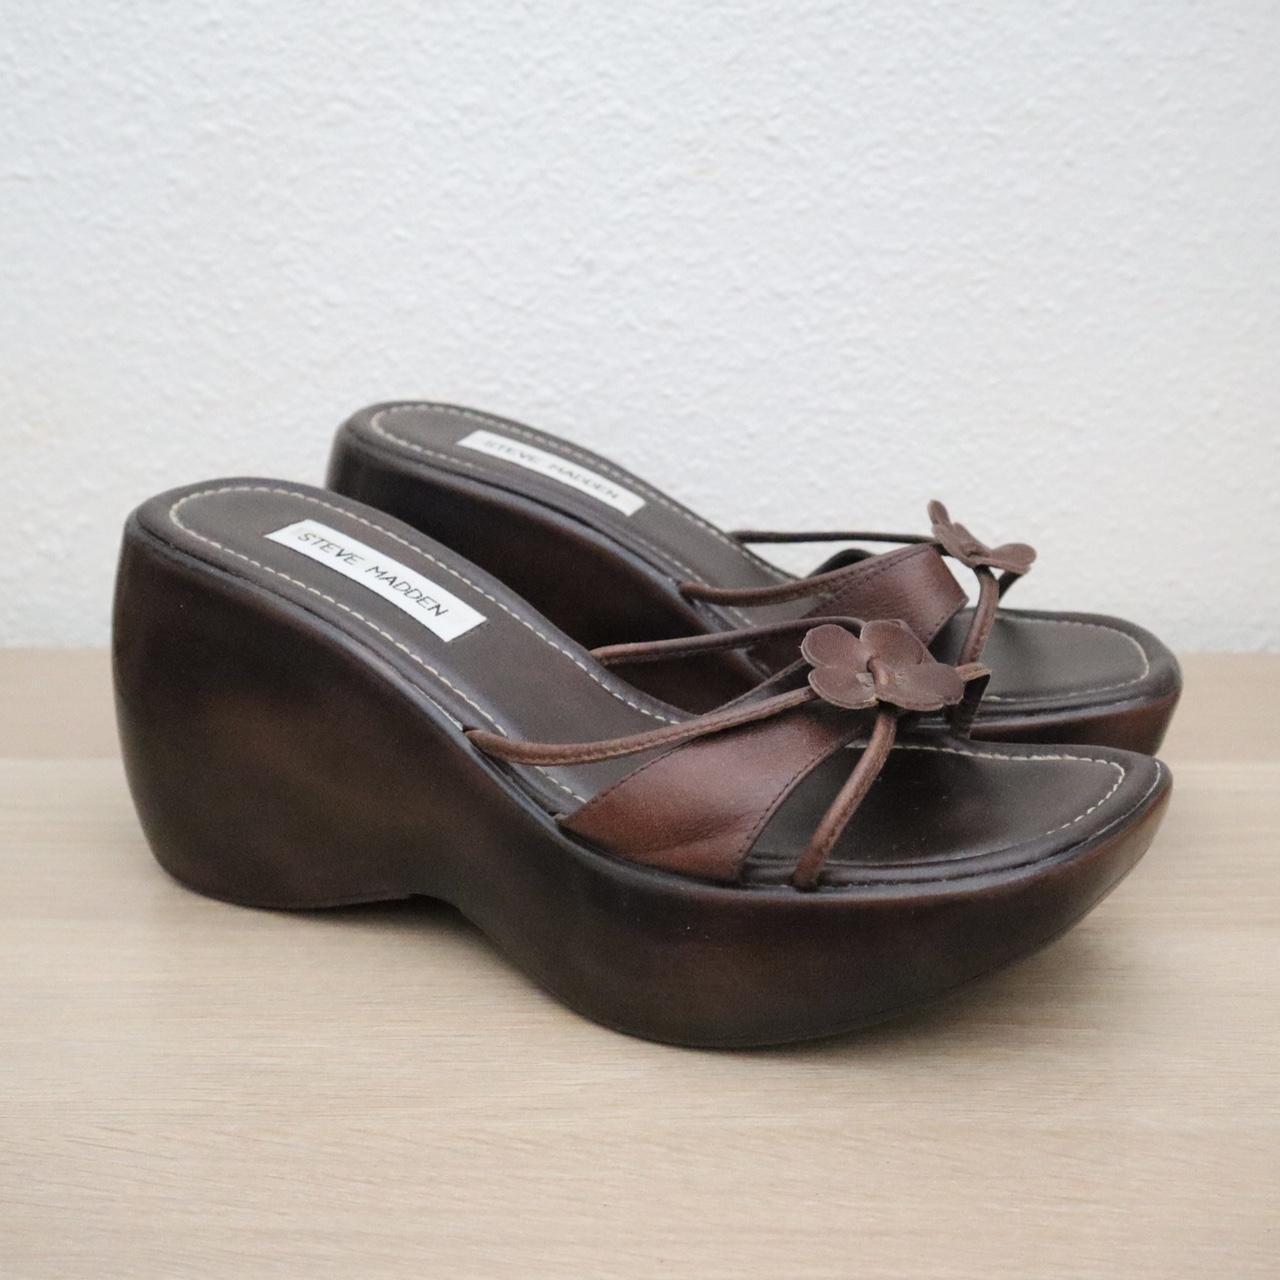 Vintage Steve Madden platform chunky sandals with a... - Depop